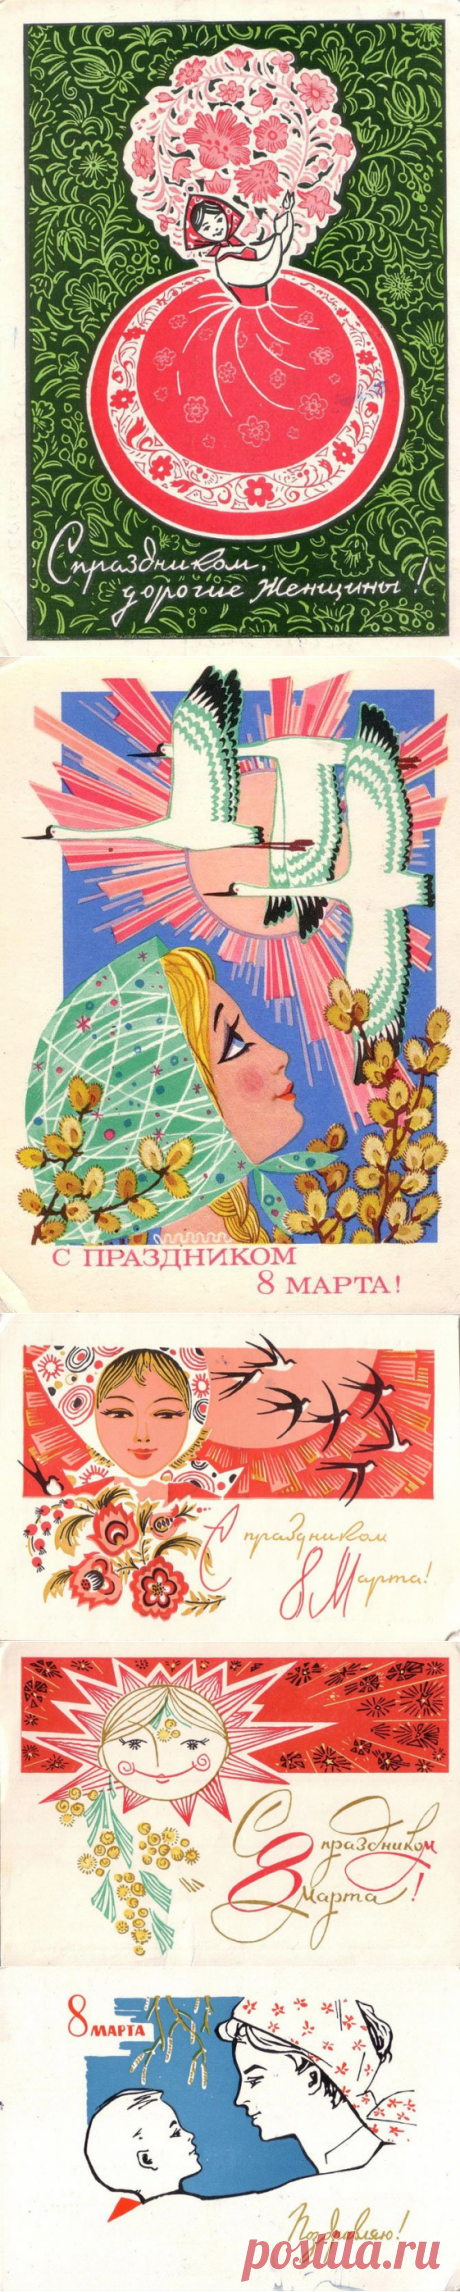 Советские поздравительные открытки к 8 марта | Изюминки